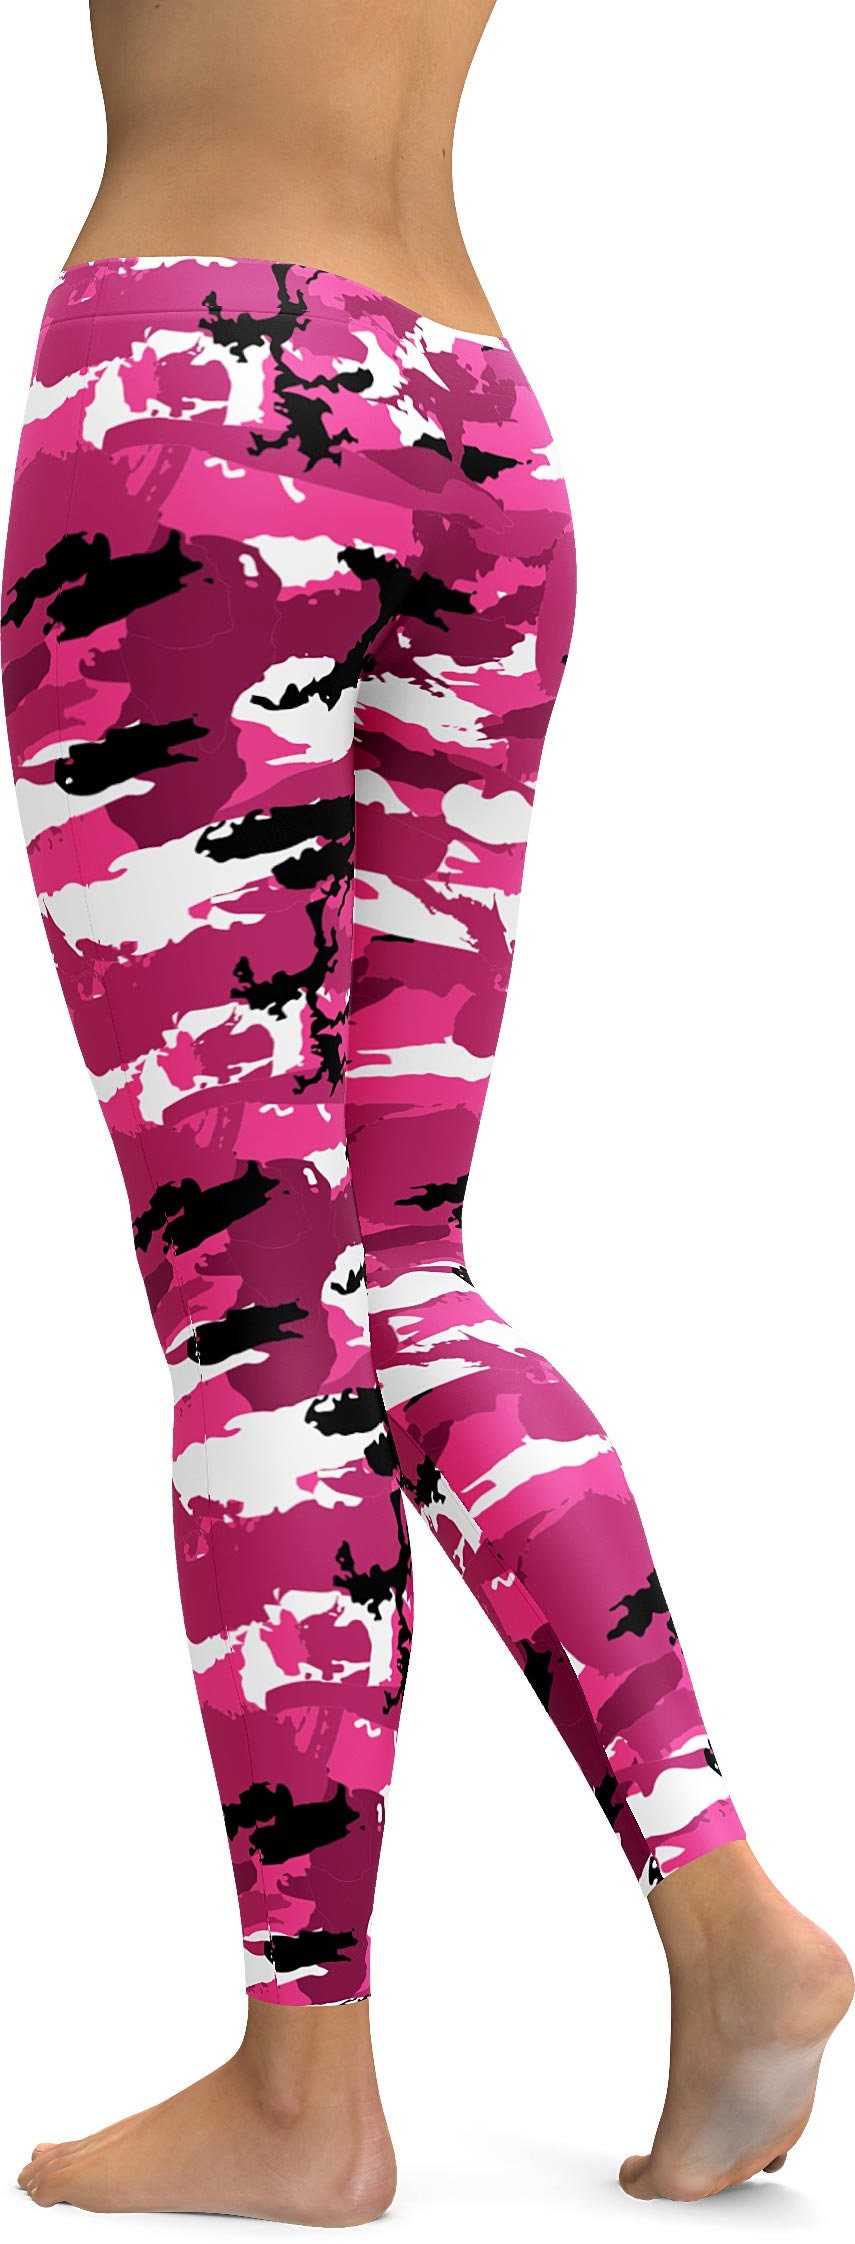 Pink Camo Leggings, Tiktok Leggings for Women, Workout Exercise Printed  Legging, Butter Soft Yoga Pants for Her, High Waist Tights for Women 